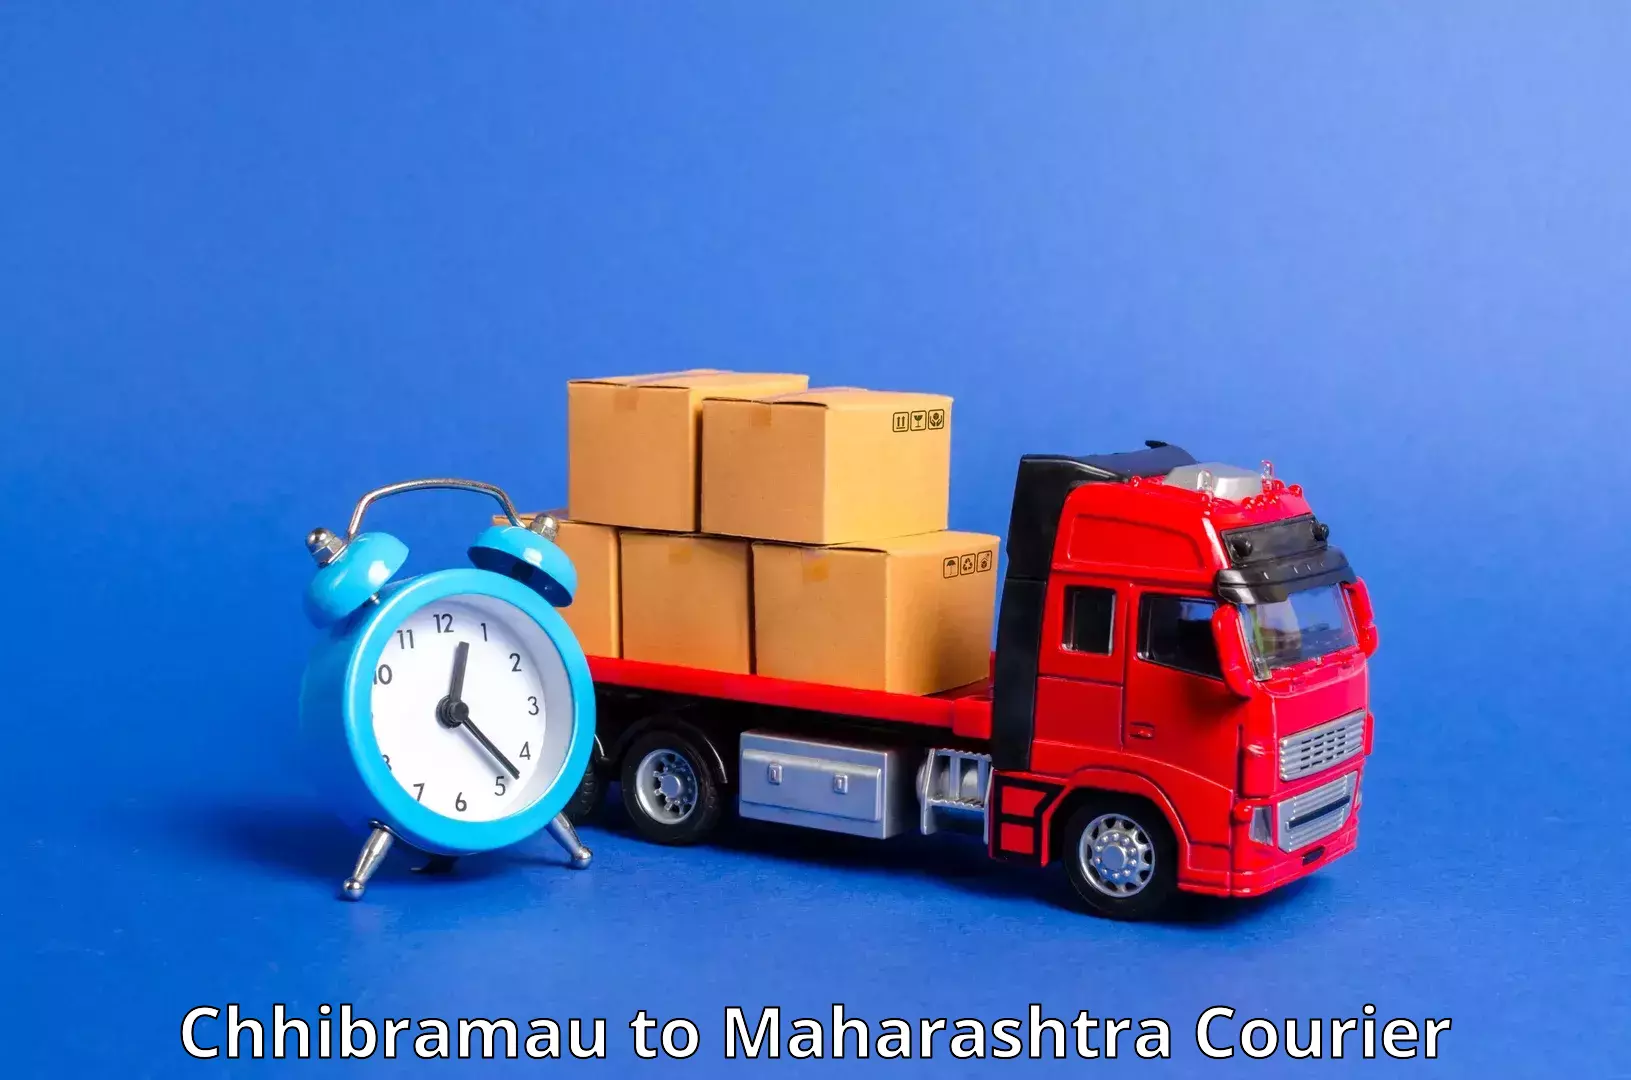 International courier rates Chhibramau to Ganpatipule